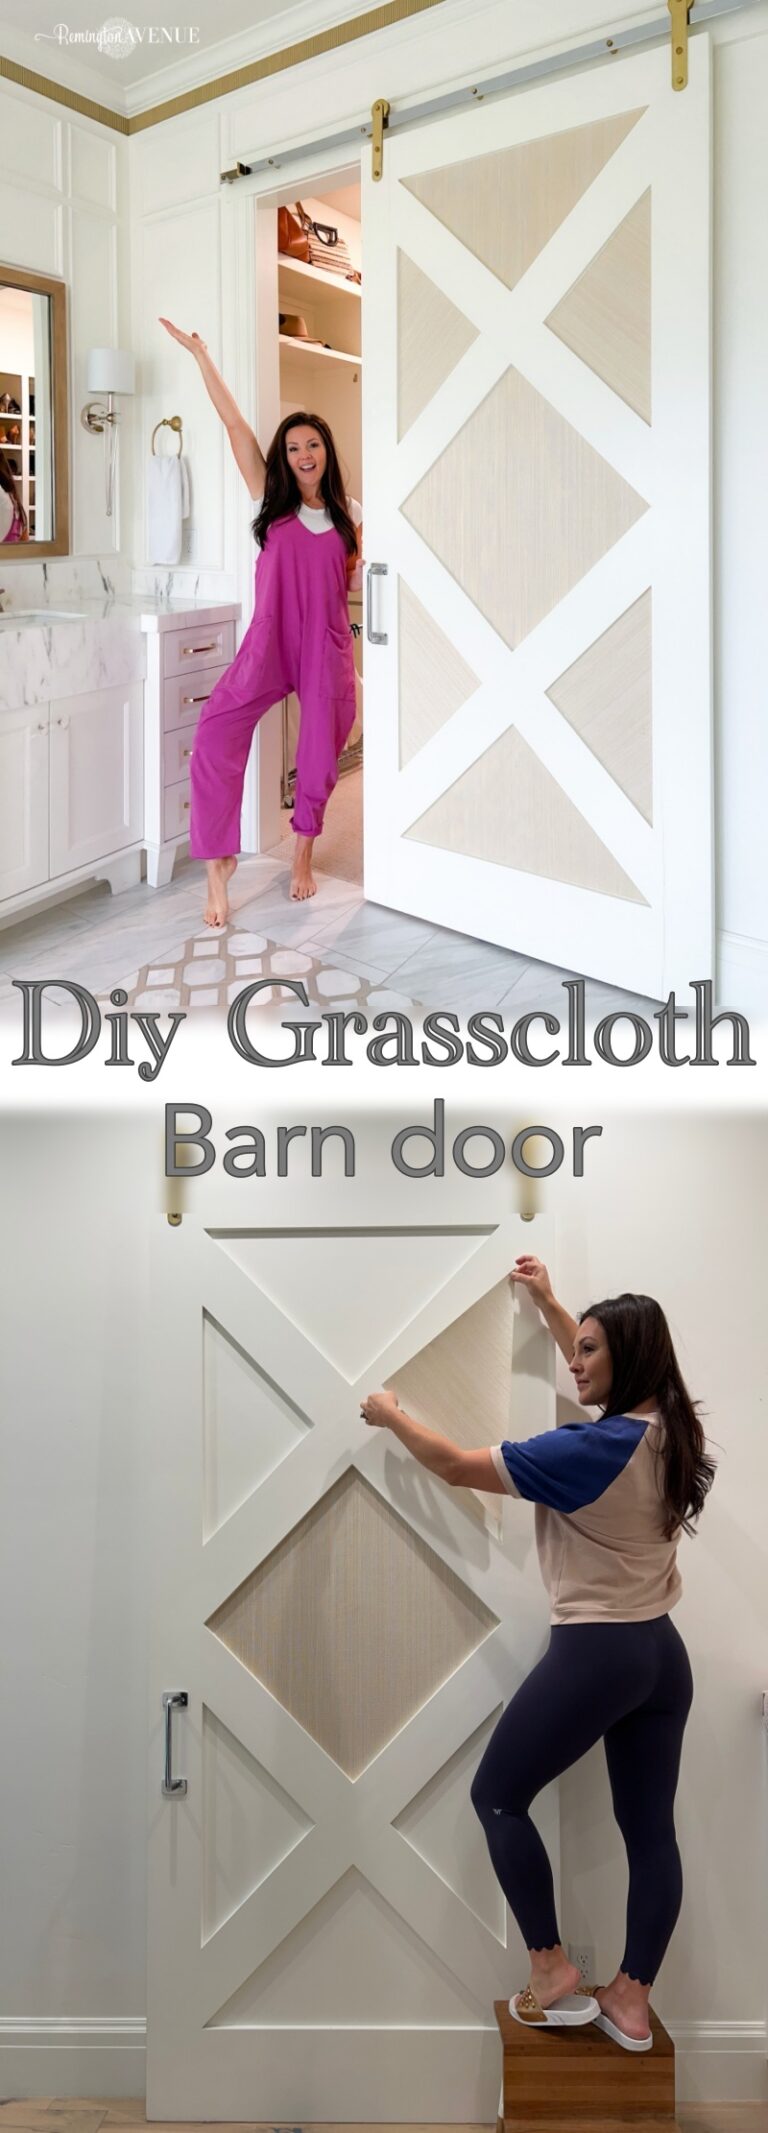 DIY Grasscloth Barn Door